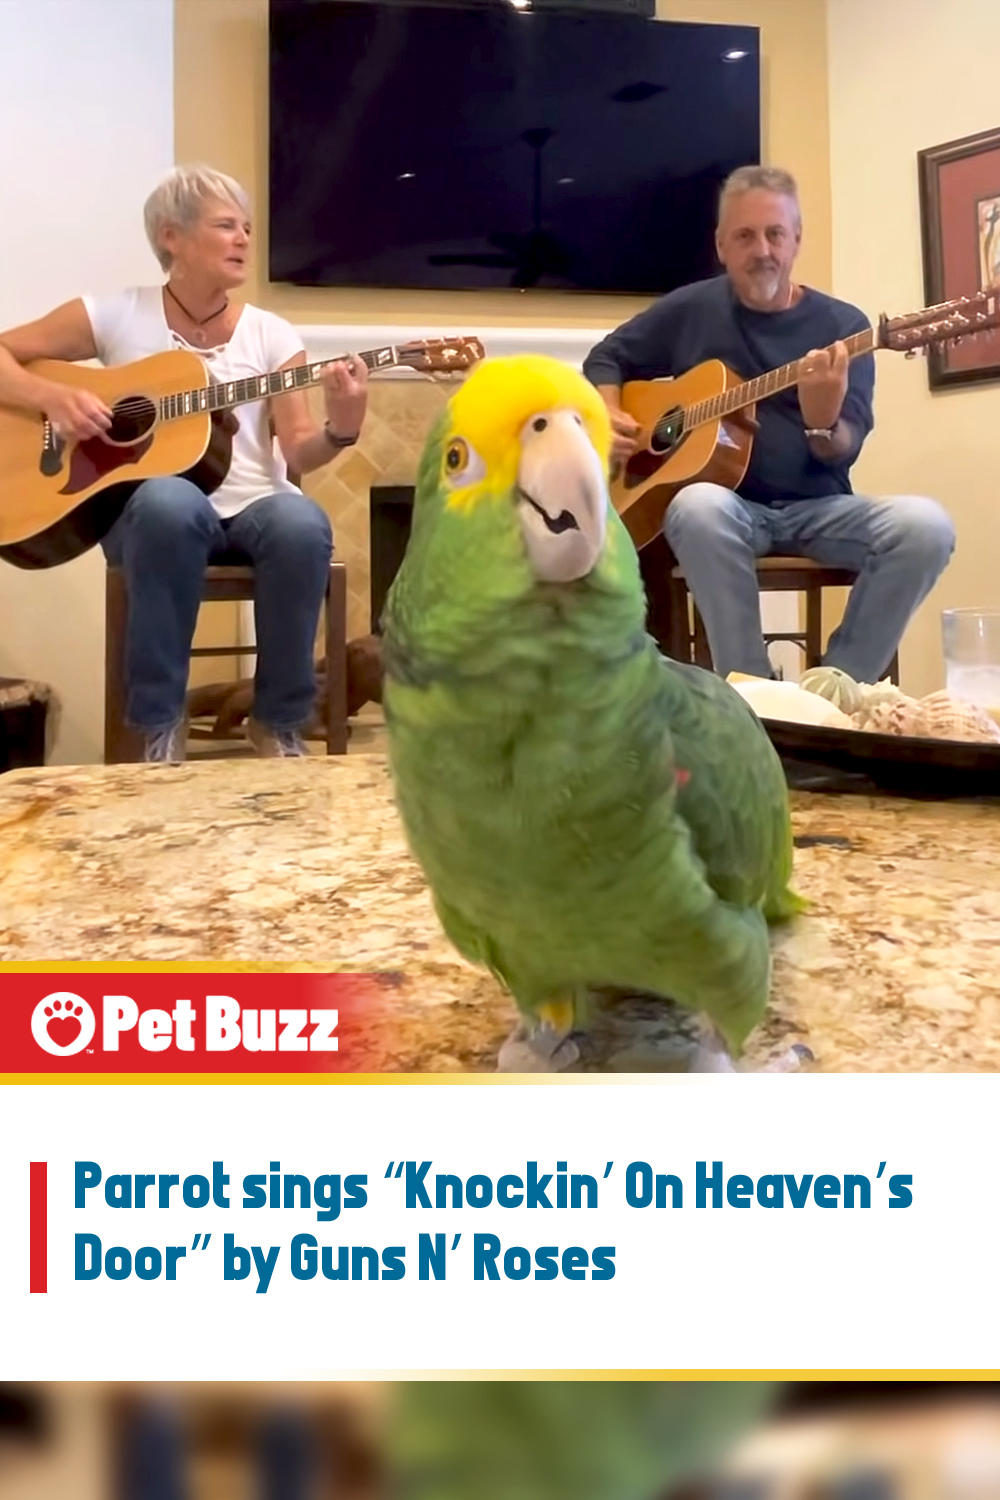 Parrot sings “Knockin’ On Heaven’s Door” by Guns N’ Roses